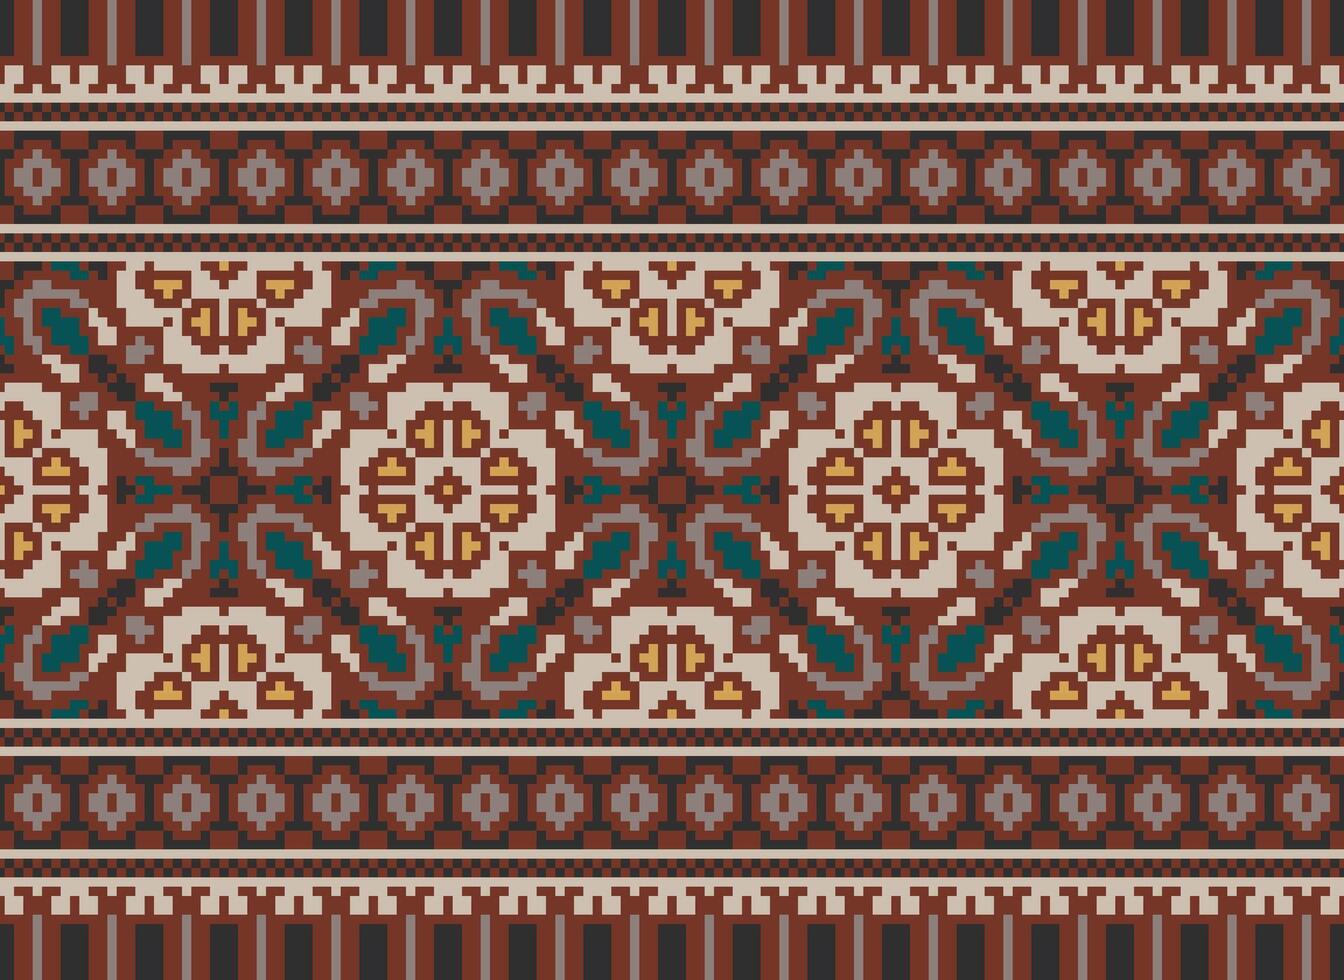 africano cruzar puntada bordado en fondo.geometrico étnico oriental sin costura modelo tradicional.azteca estilo resumen vector ilustración.diseño para textura,tela,ropa,envoltura,alfombra.